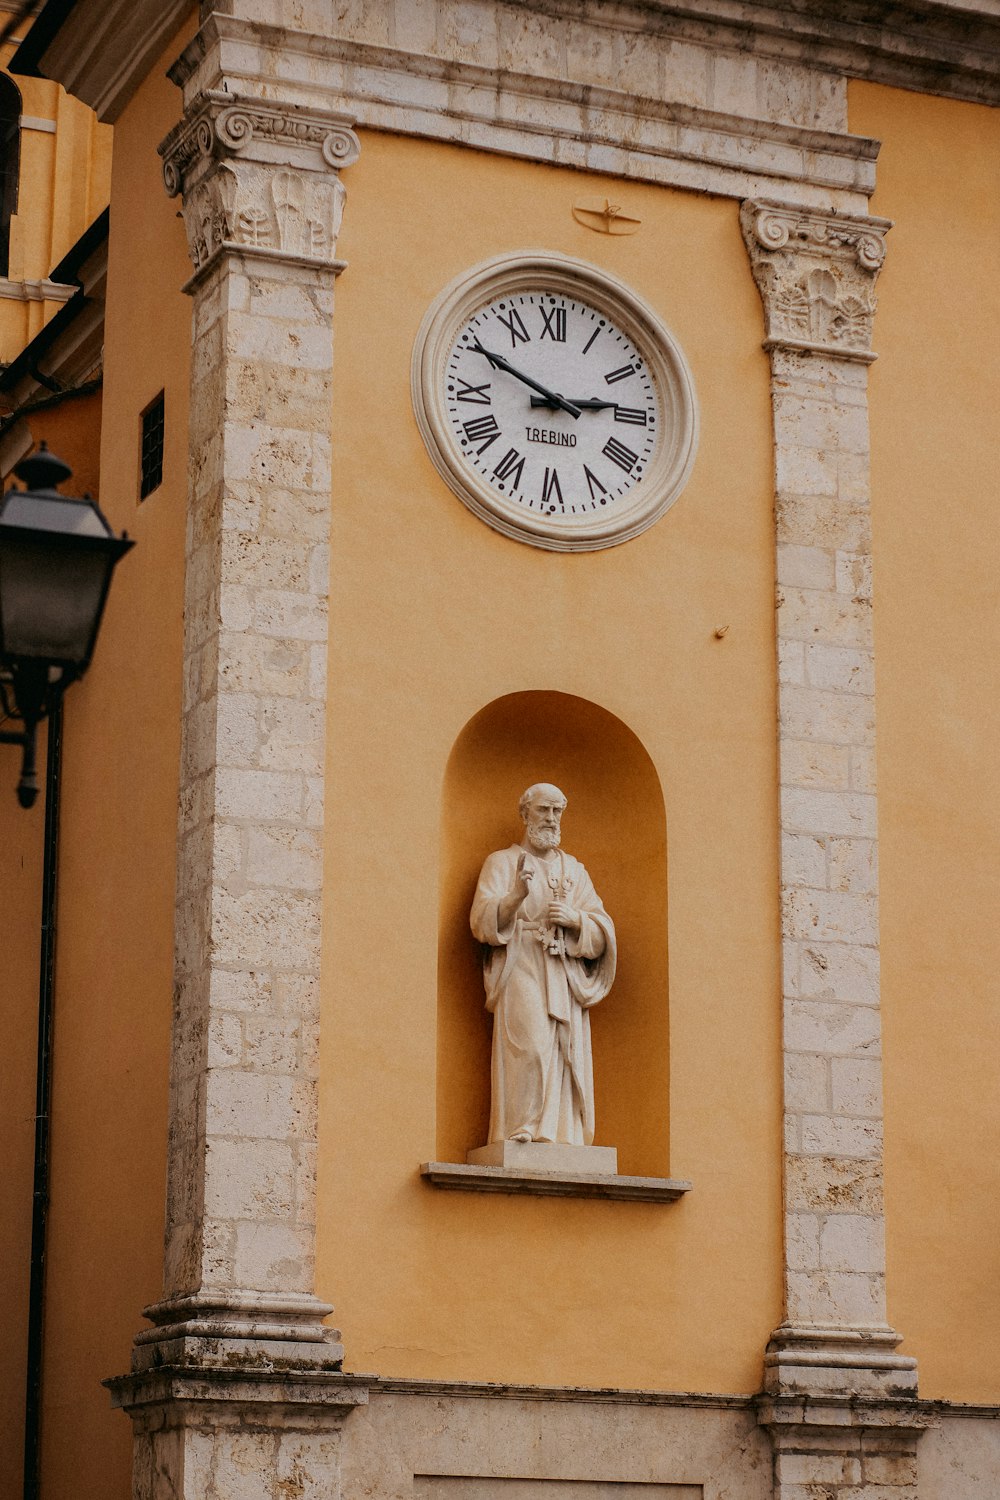 eine Uhr an der Seite eines Gebäudes mit einer Statue davor